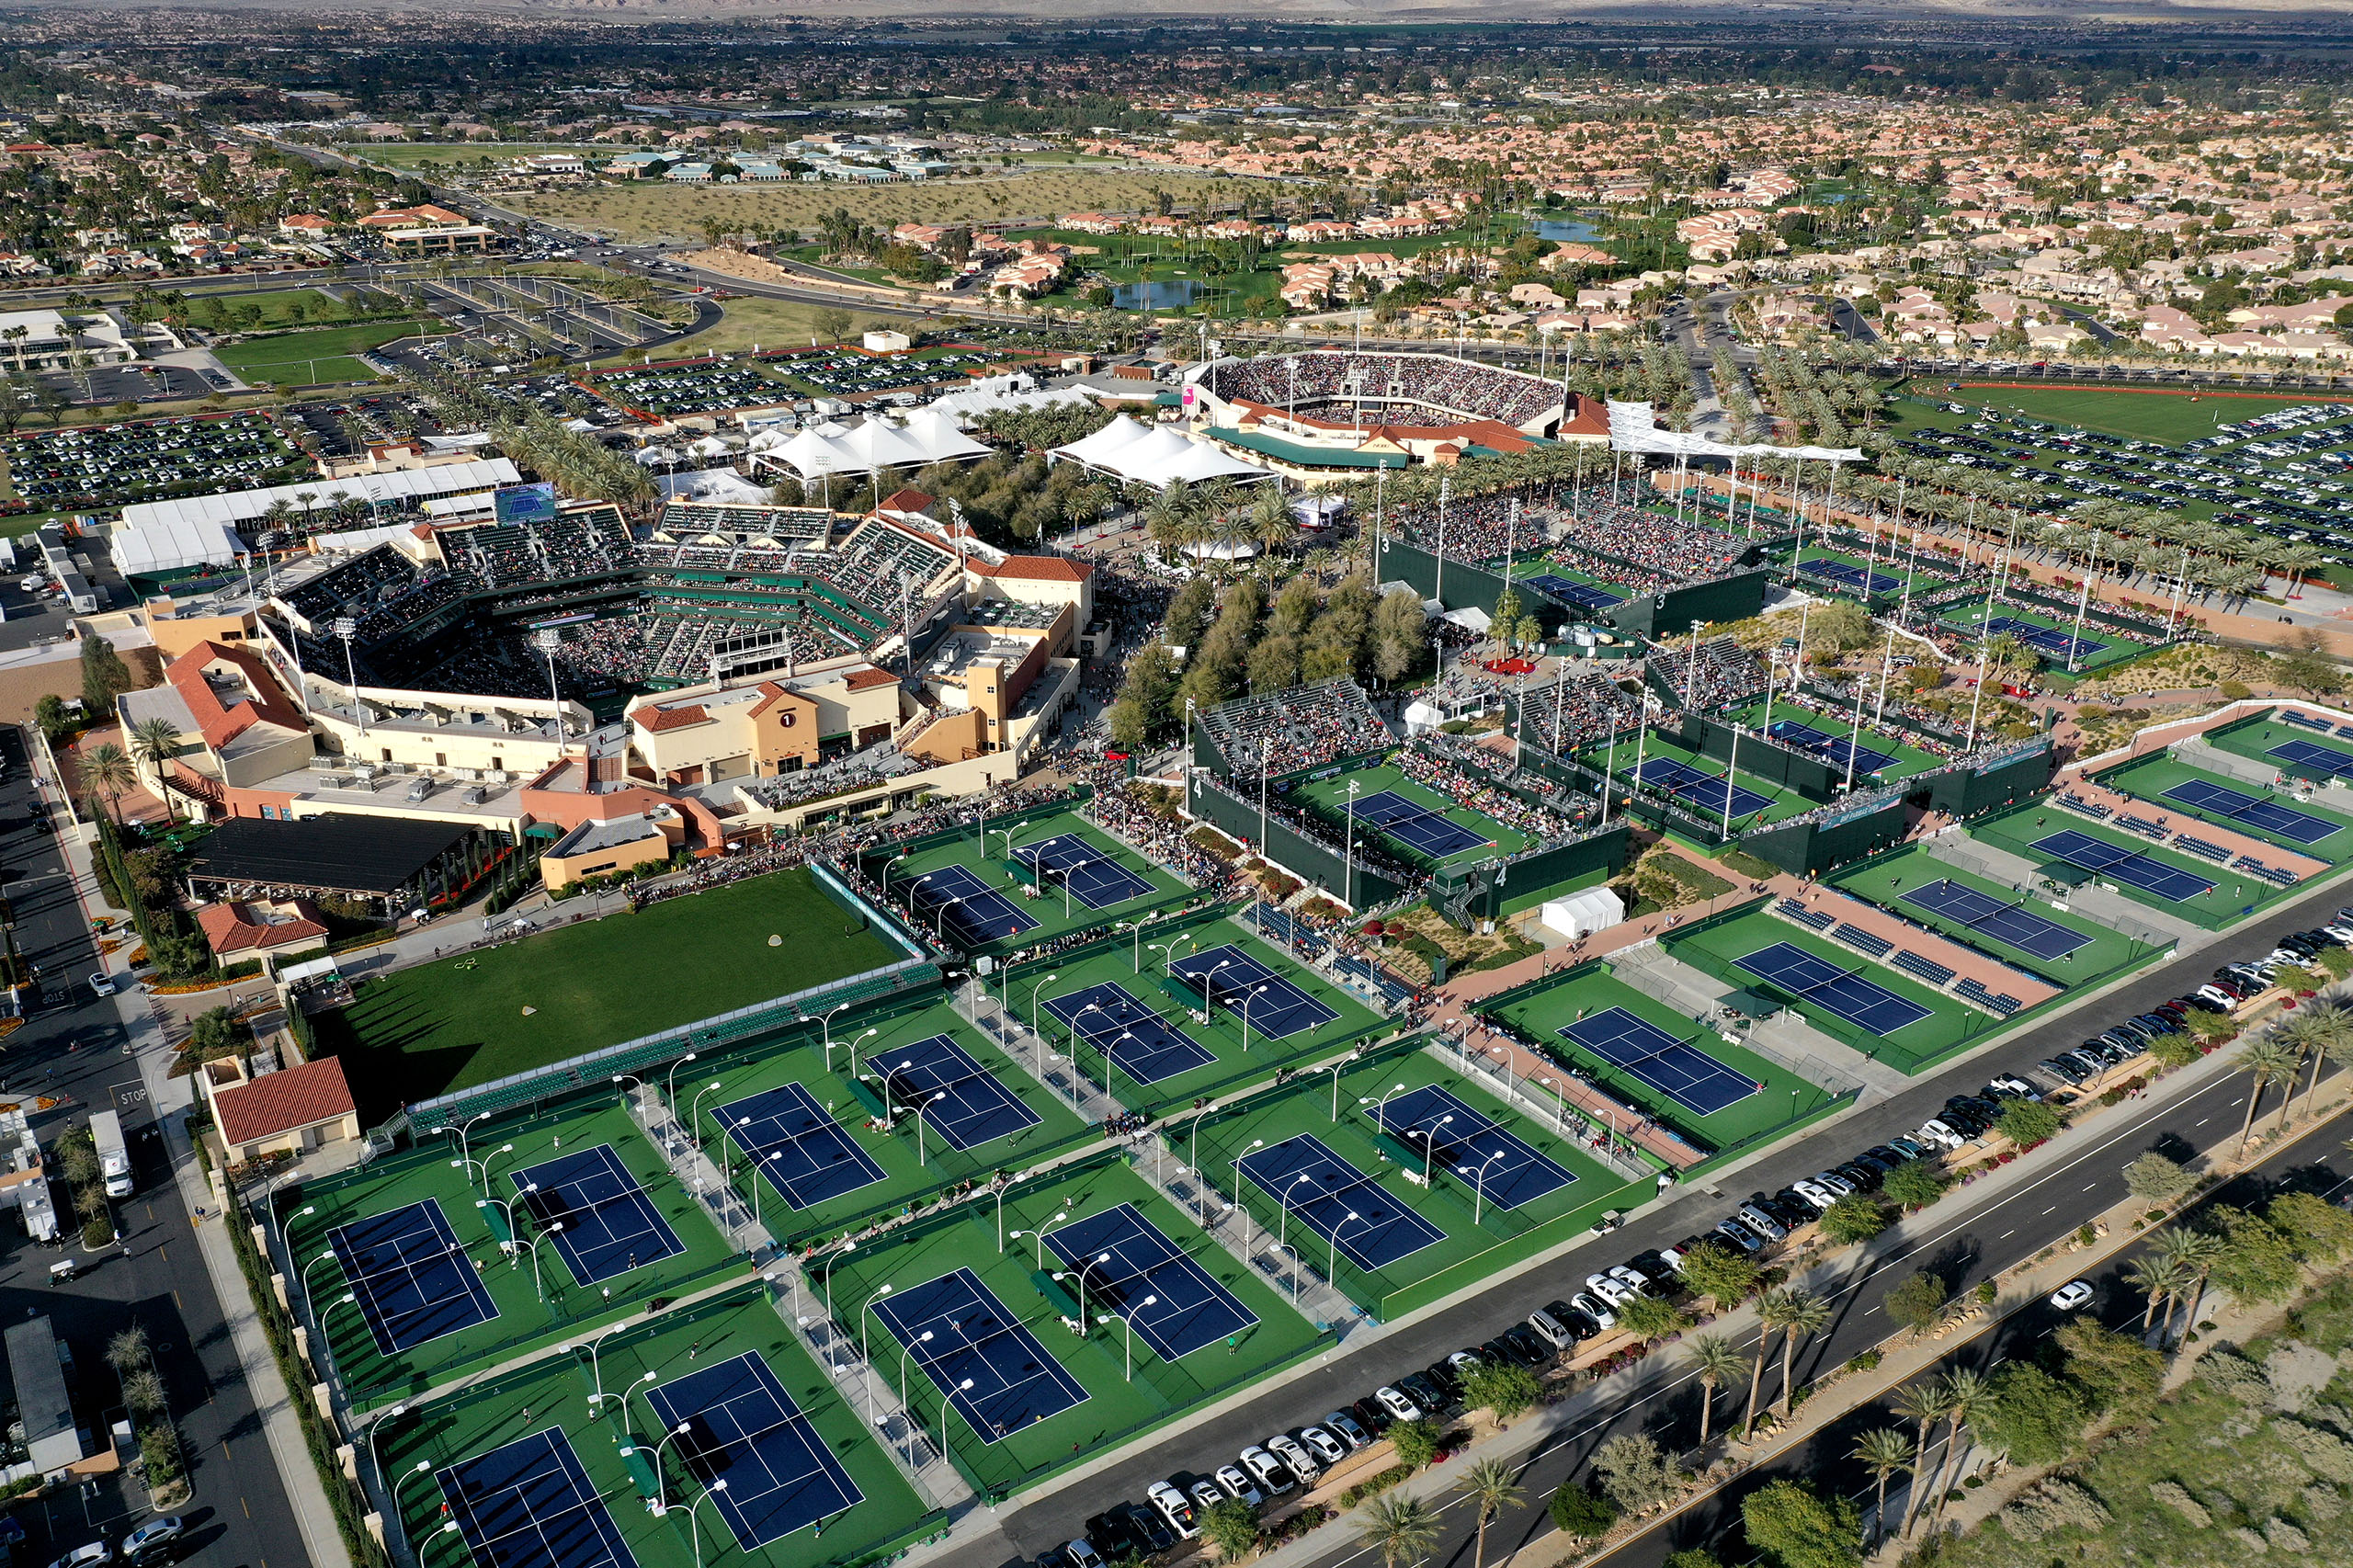  Indian Wells Tennis Garden